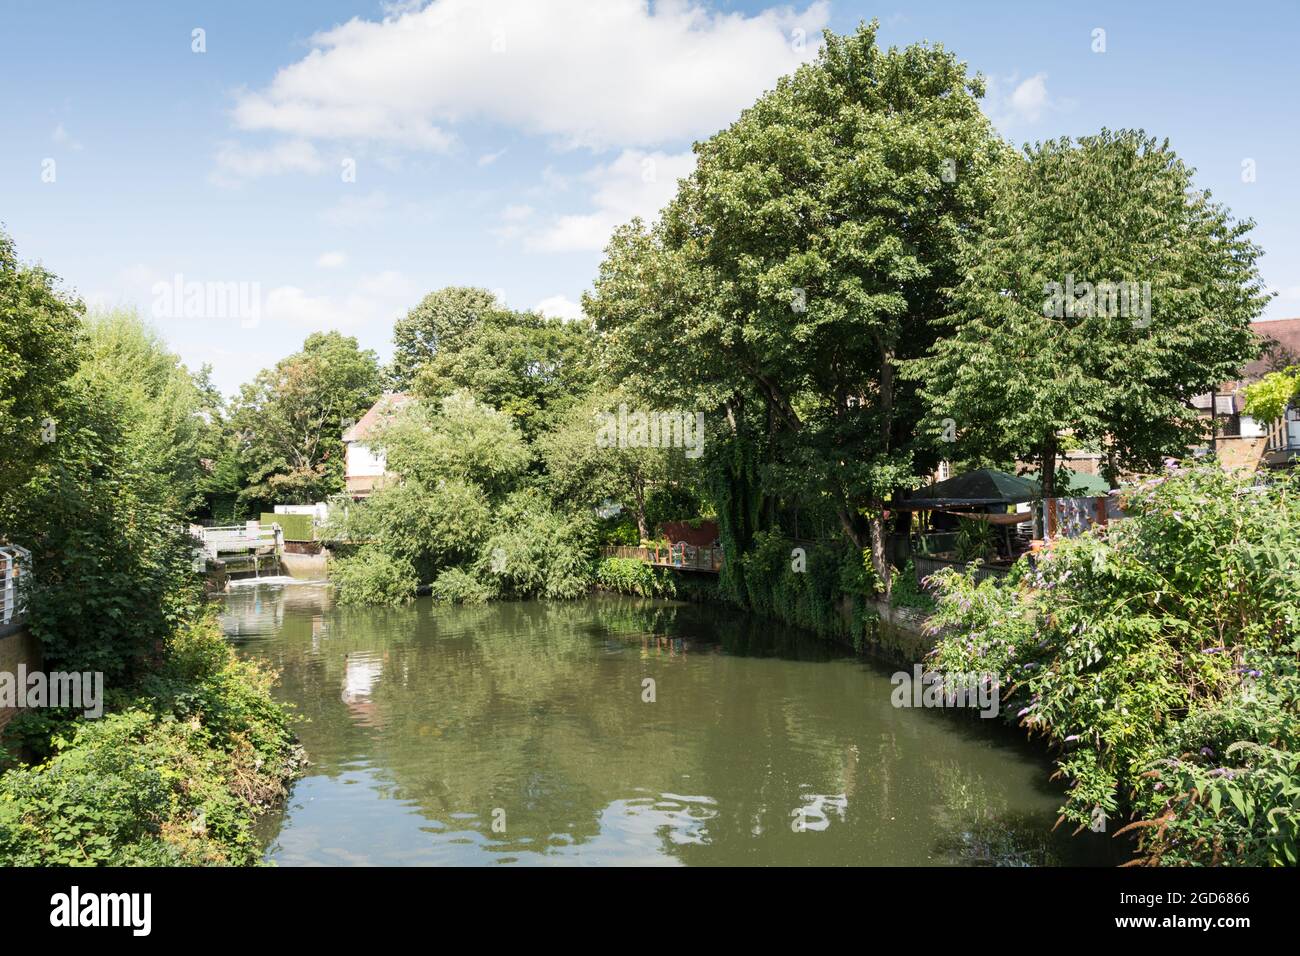 Une scène tranquille sur la rivière Brant à côté de Brentford Gauging Locks, Hounslow, Middlesex, Angleterre, Royaume-Uni Banque D'Images